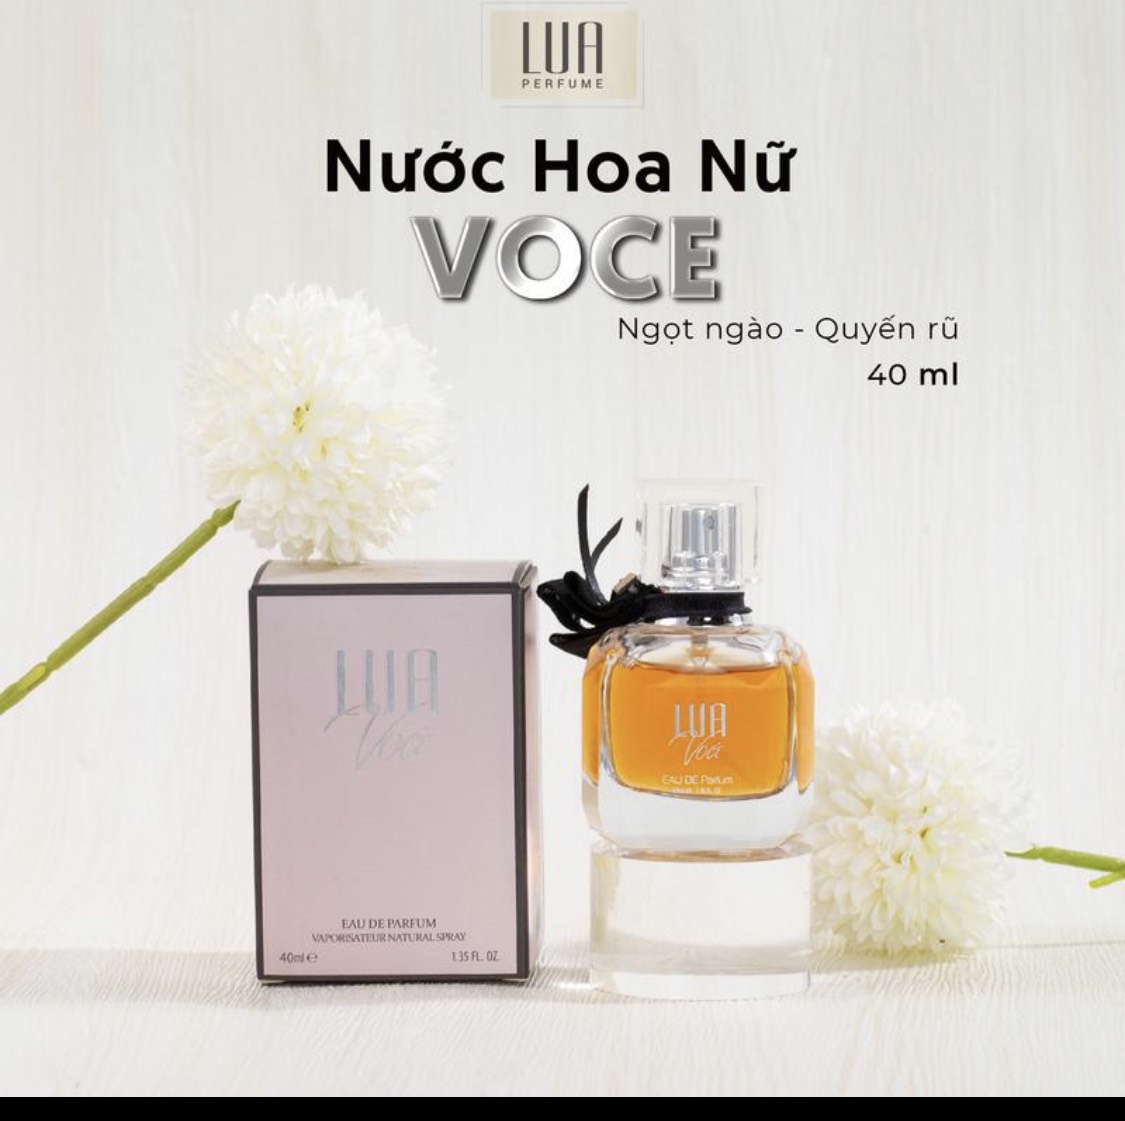 Nước Hoa Lua Perfume Chính Hãng - Sỉ Mỹ Phẩm Online